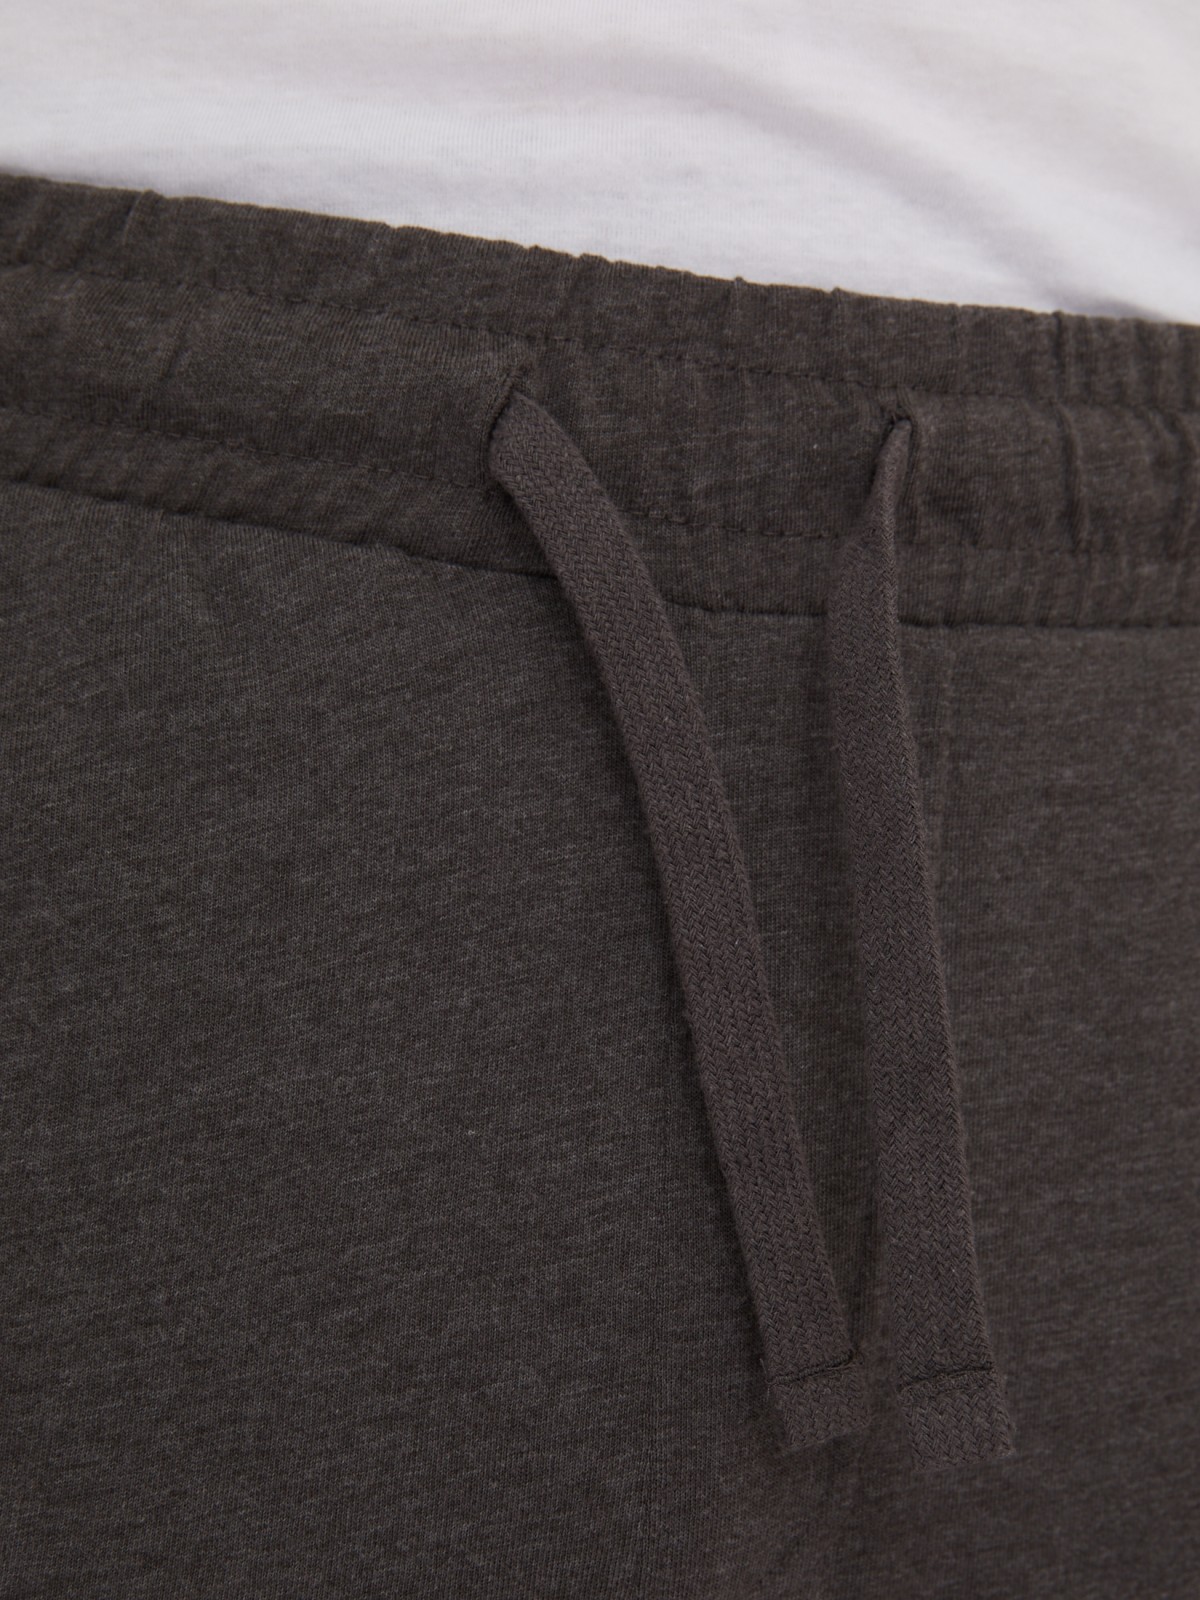 Трикотажные брюки в спортивном стиле zolla 01331765Q022, цвет темно-серый, размер S - фото 3